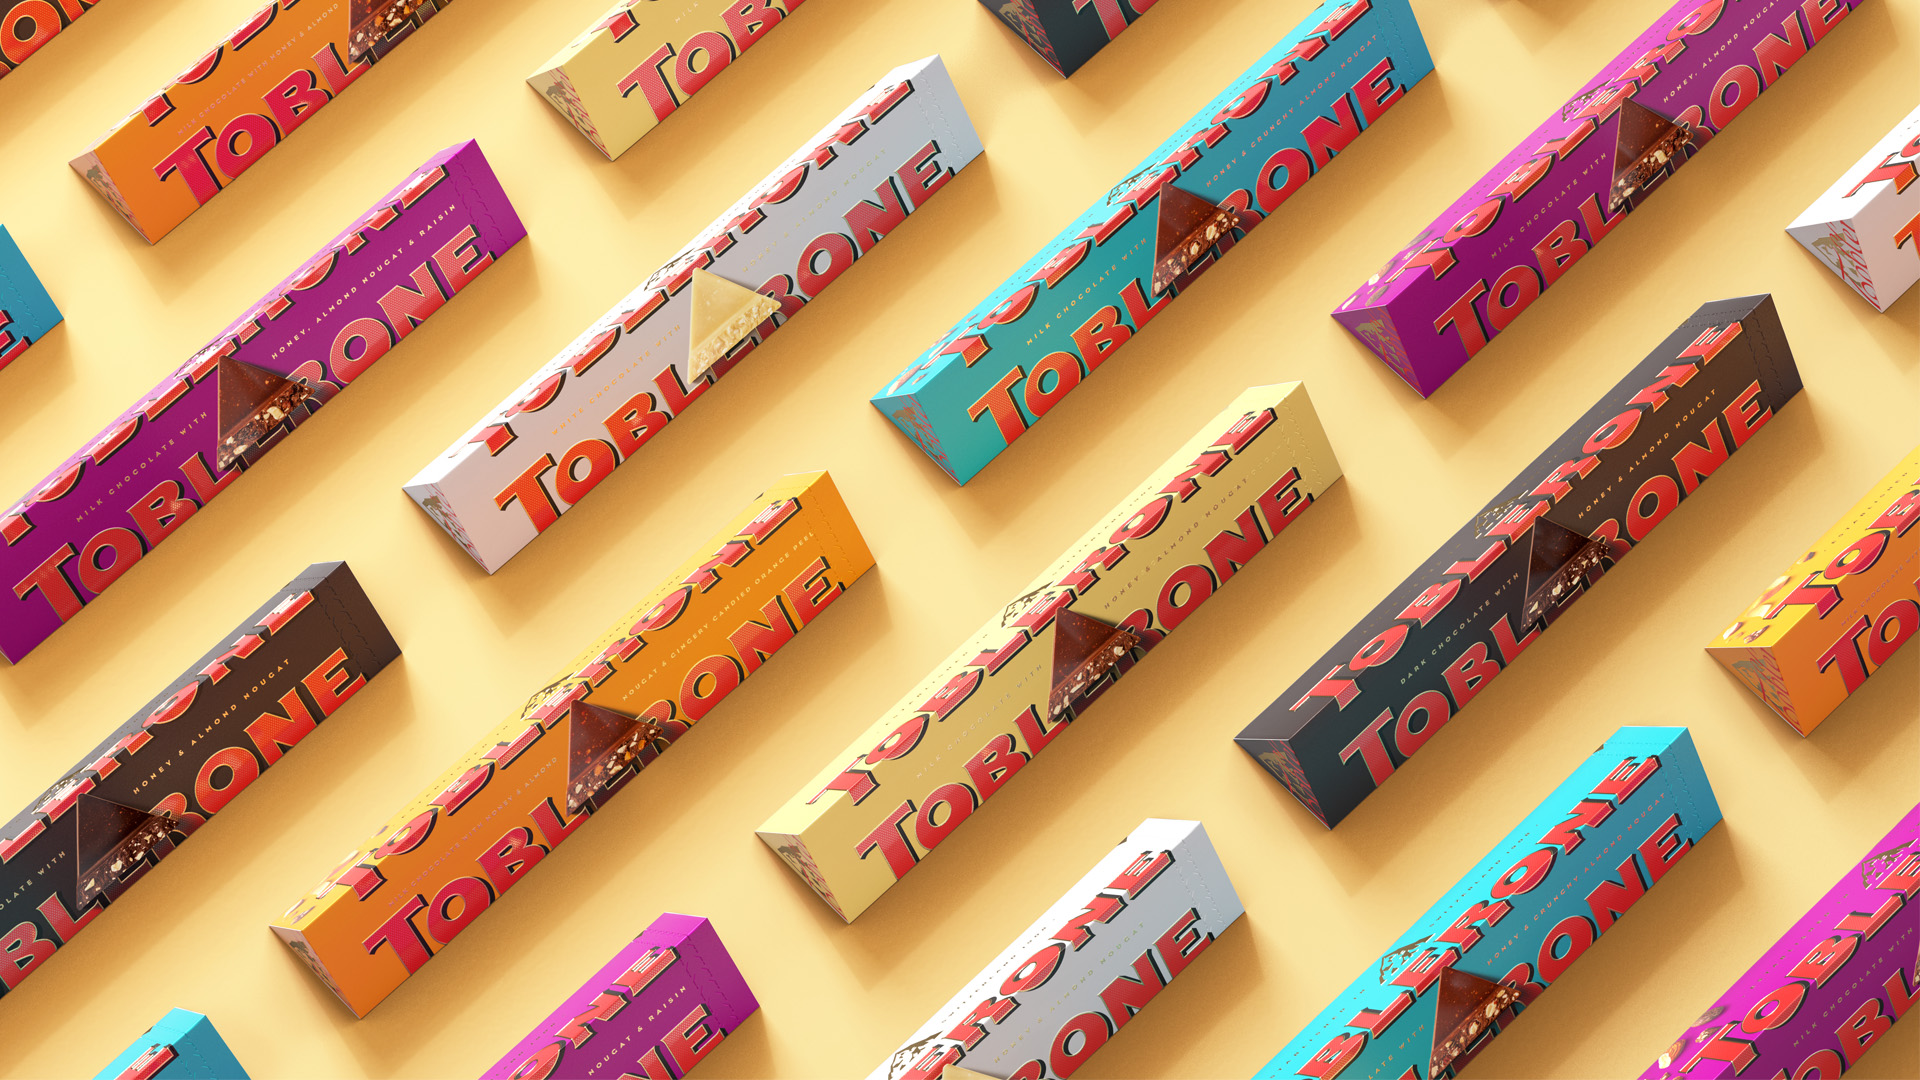 Toblerone to drop Matterhorn logo from packaging as it's no longer